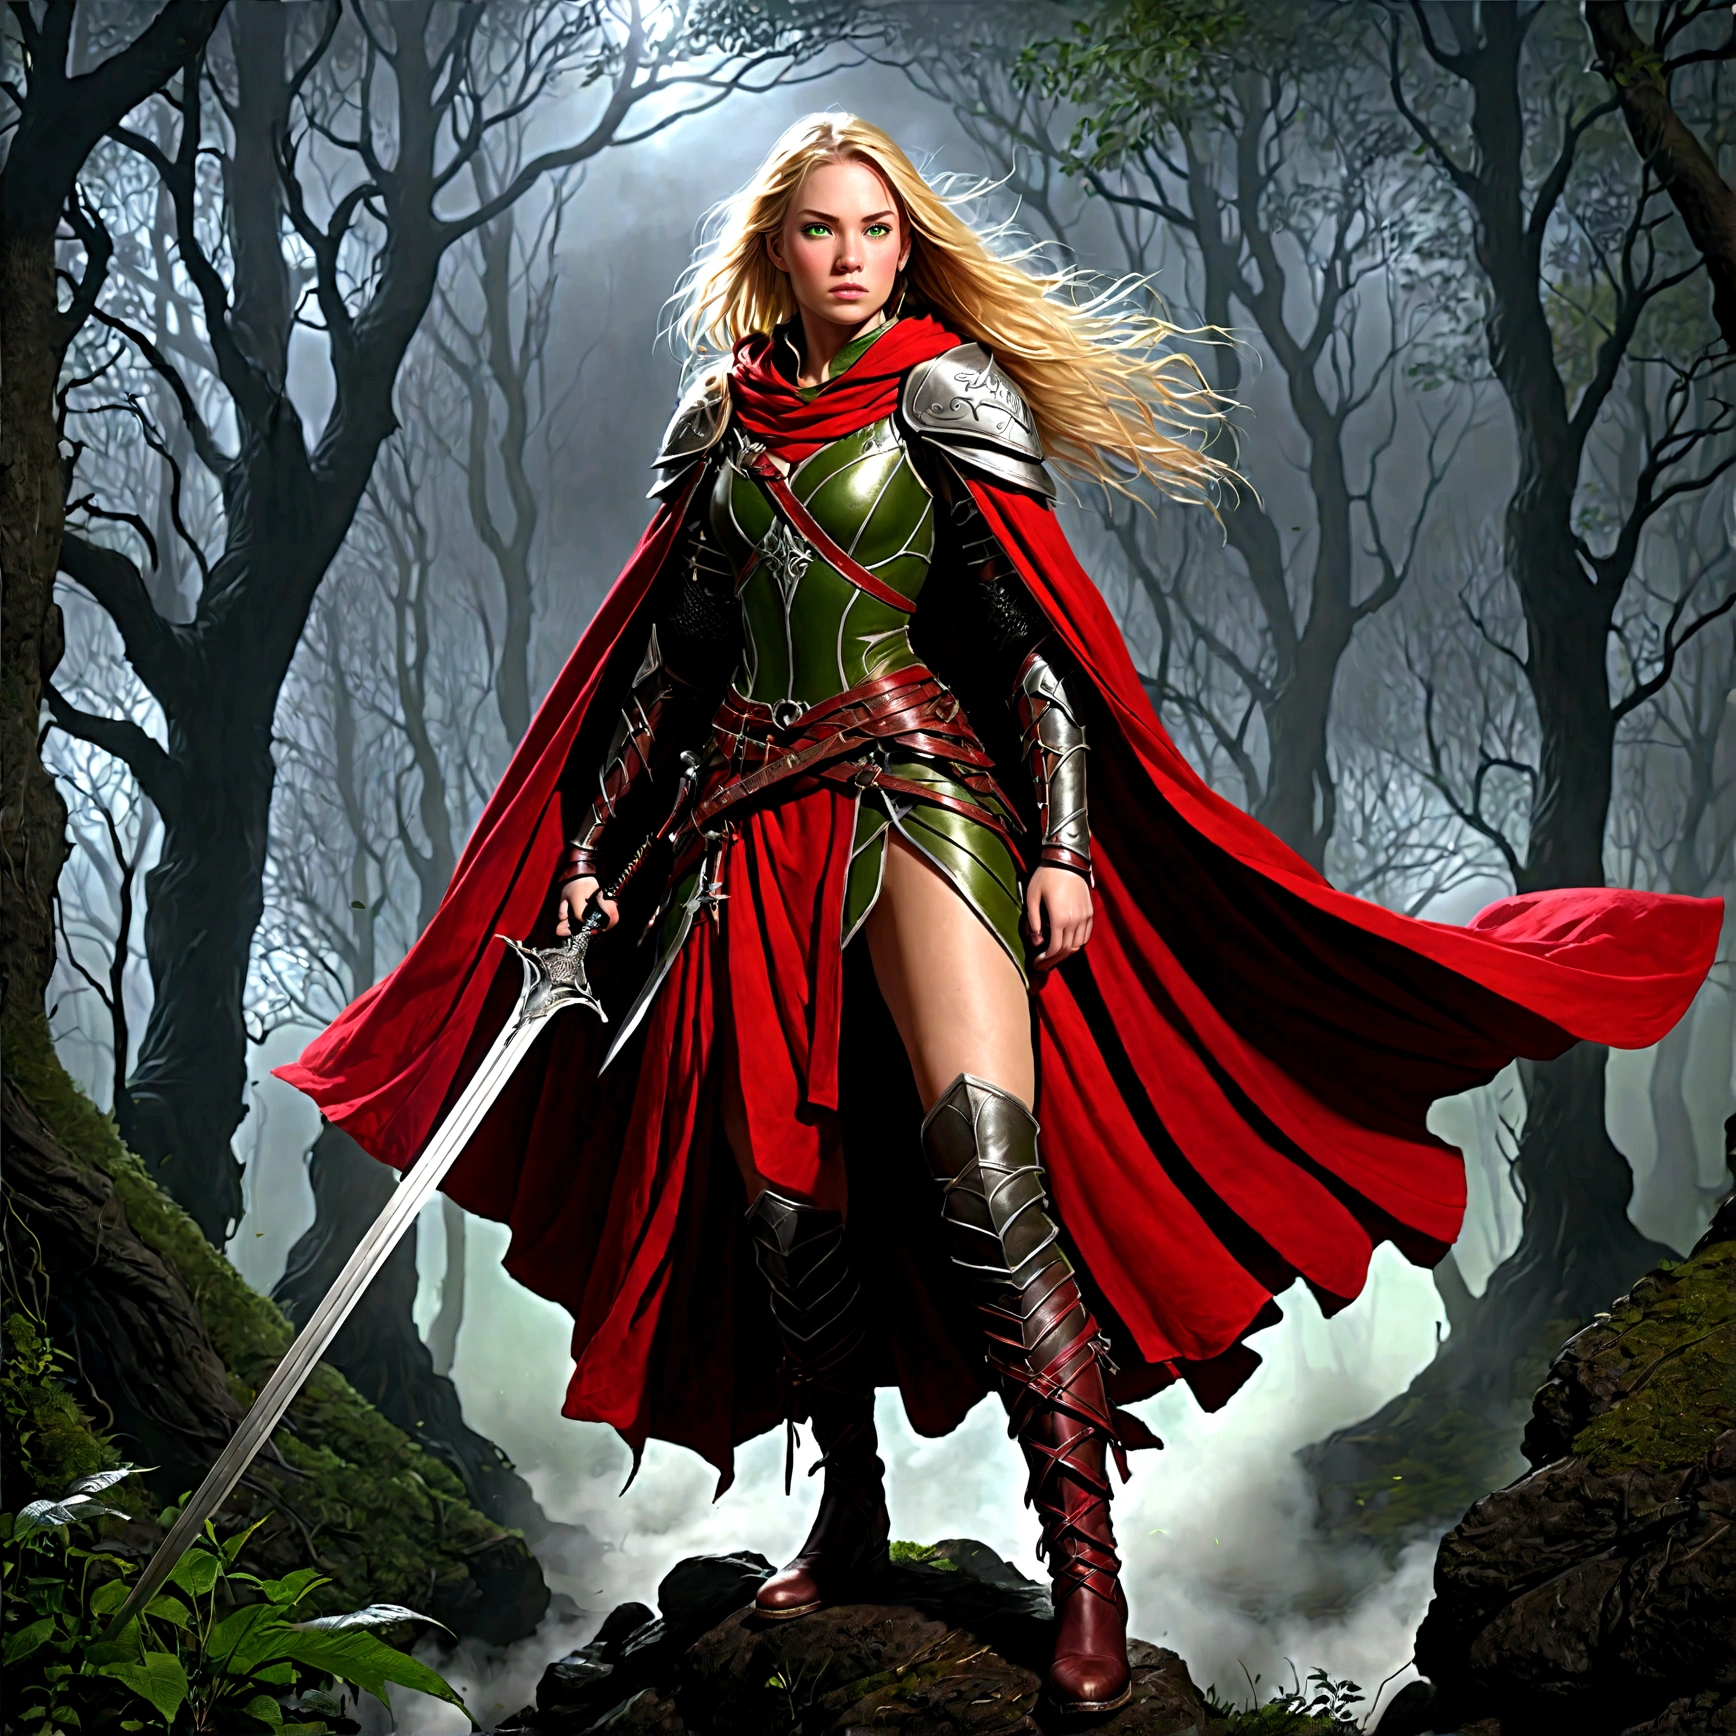 Fantasy-Kunst, RPG art, Dark Fantasy-Kunst, Ultraweite Aufnahme, Roh, fotorealistisch, ein Bild von (1Einzel: 1.5) weiblicher menschlicher Ranger, der Ranger, eine exquisite, schöne menschliche Frau, langes blondes Haar, geflochtenes Haar, grüne Augen, tragen leather armor, tragen (Roter Umhang: 1.1), bewaffnet mit einem (Schwert: 1.3), tragen laced boots, nachts in einem dunklen Wald stehen, (Nebel steigt vom Boden auf: 1.3), ein Gefühl von Furcht und Angst, doch sie steht trotzig und furchtlos da, dunkler Fantasiewaldhintergrund, beste Qualität, 16k, [Extrem detailliert], Meisterwerk, beste Qualität, (Extrem detailliert), Ganzkörper, Ultraweite Aufnahme, Fotorealismus, Schwert und Schild, dunkler Roman